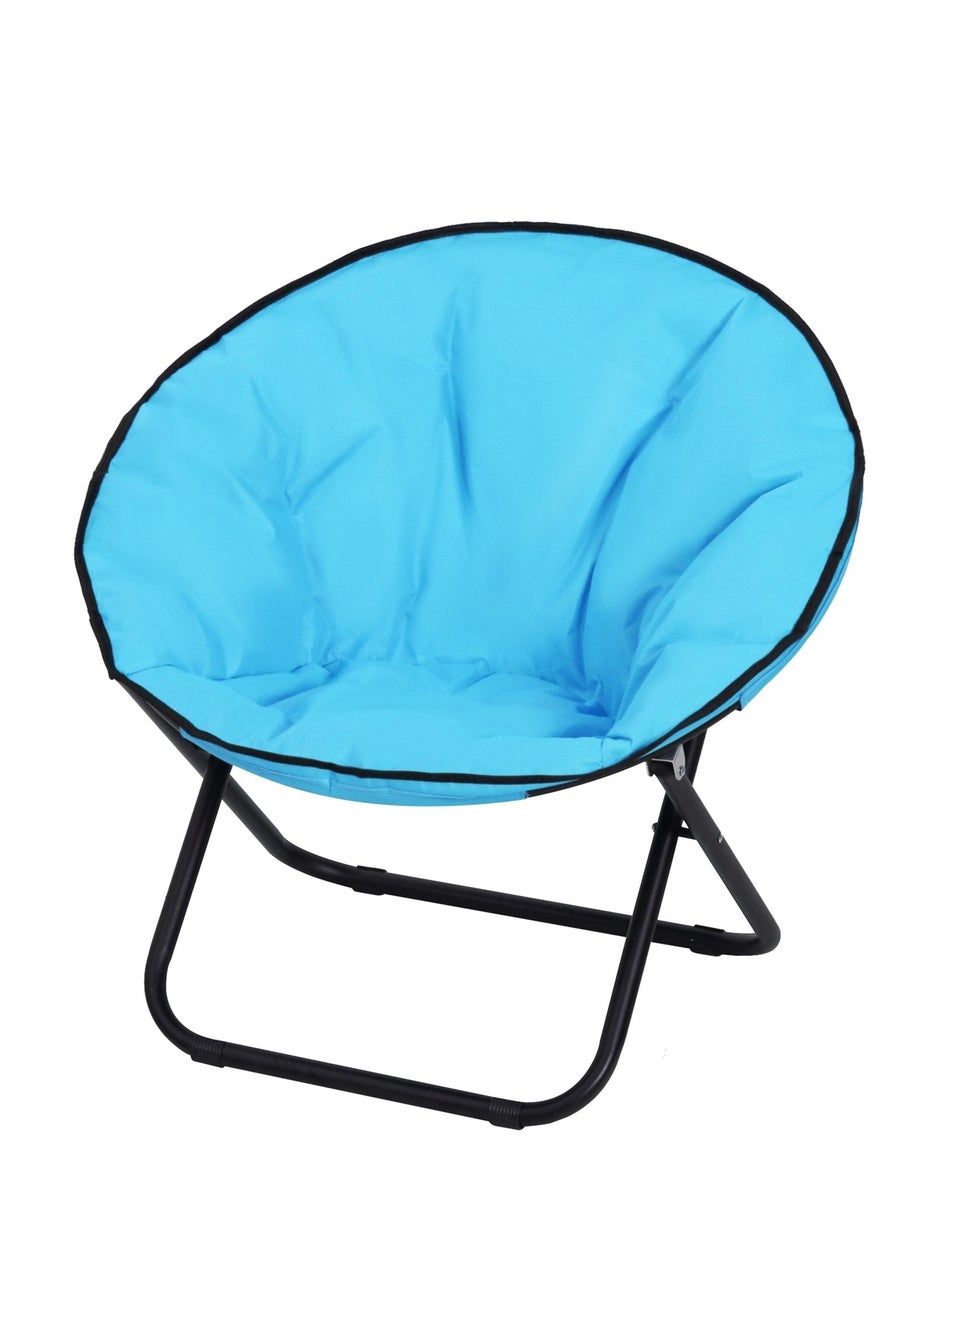 Outsunny Garden Moon Chair Folding Portable Saucer Seat- Grey